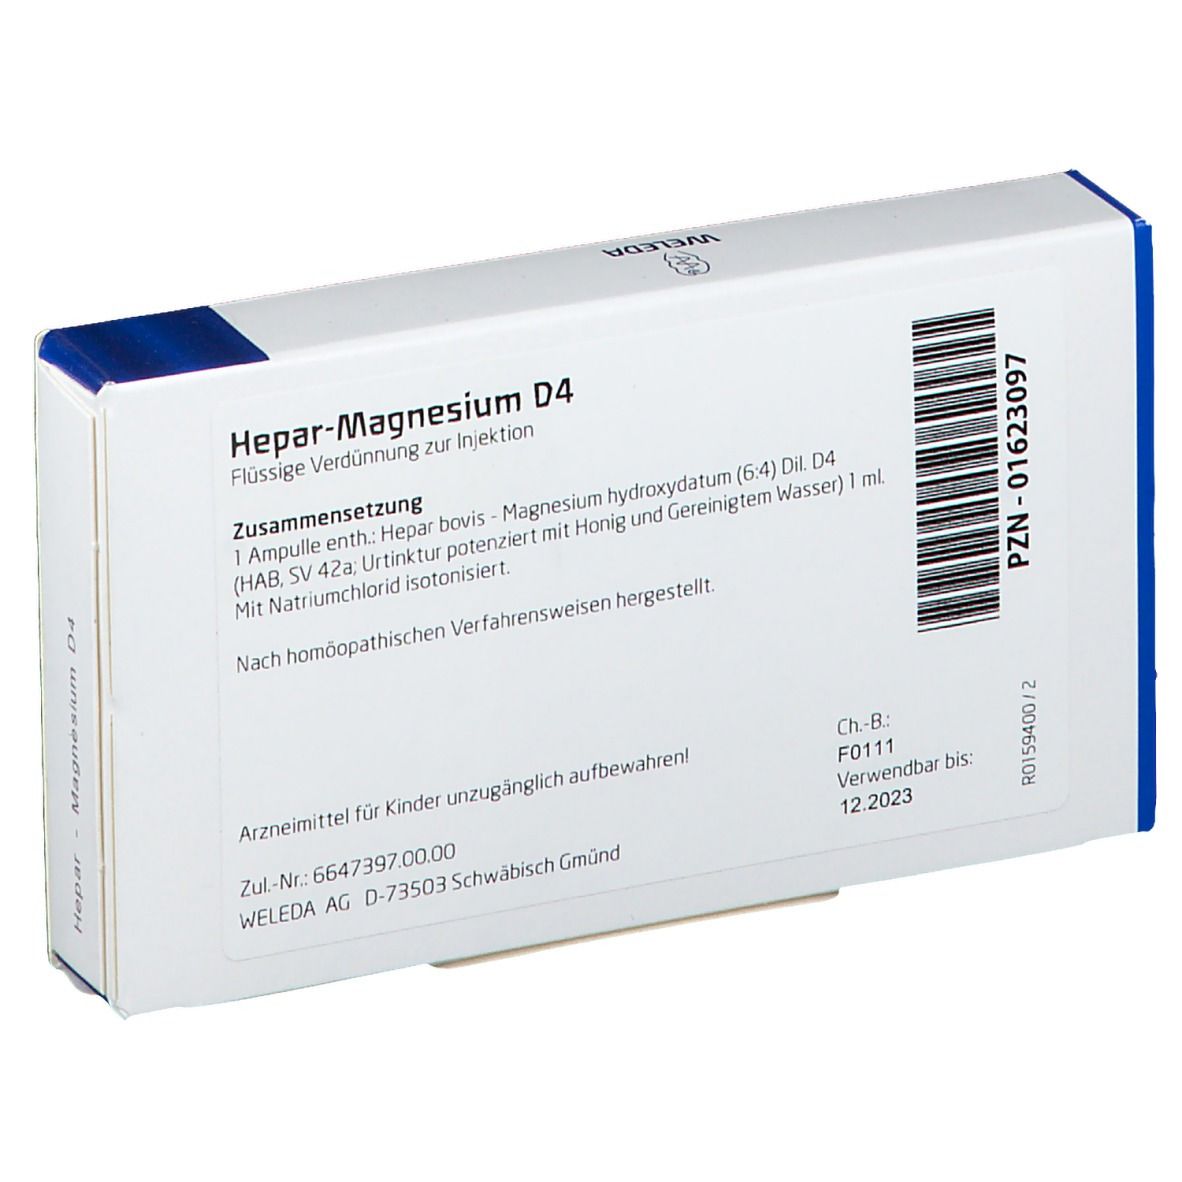 Hepar-Magnesium D4